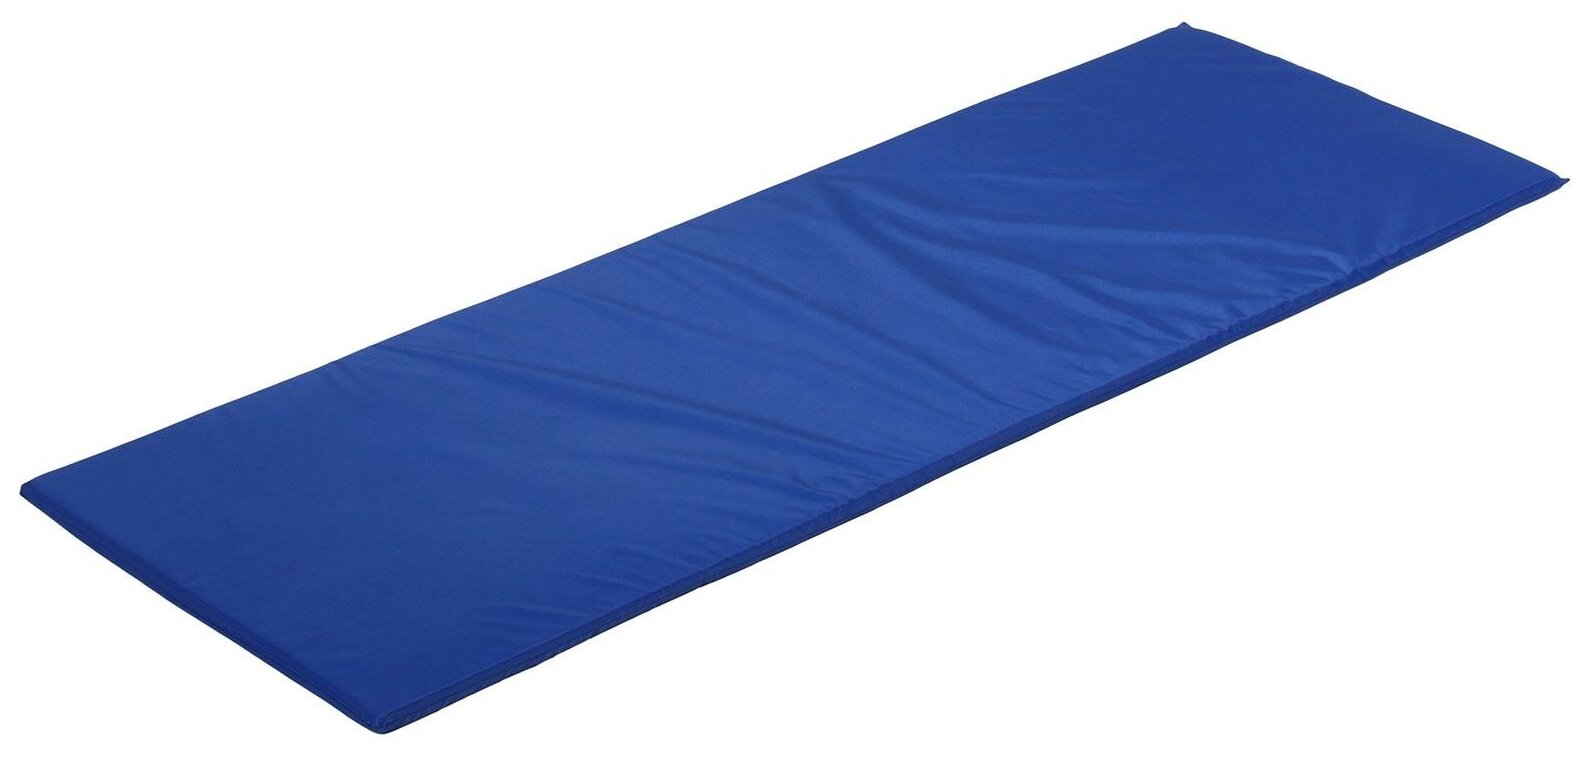 Мат ONLITOP, мягкий, ткань oxford, размер 145 х 52 х 2 см, цвет синий